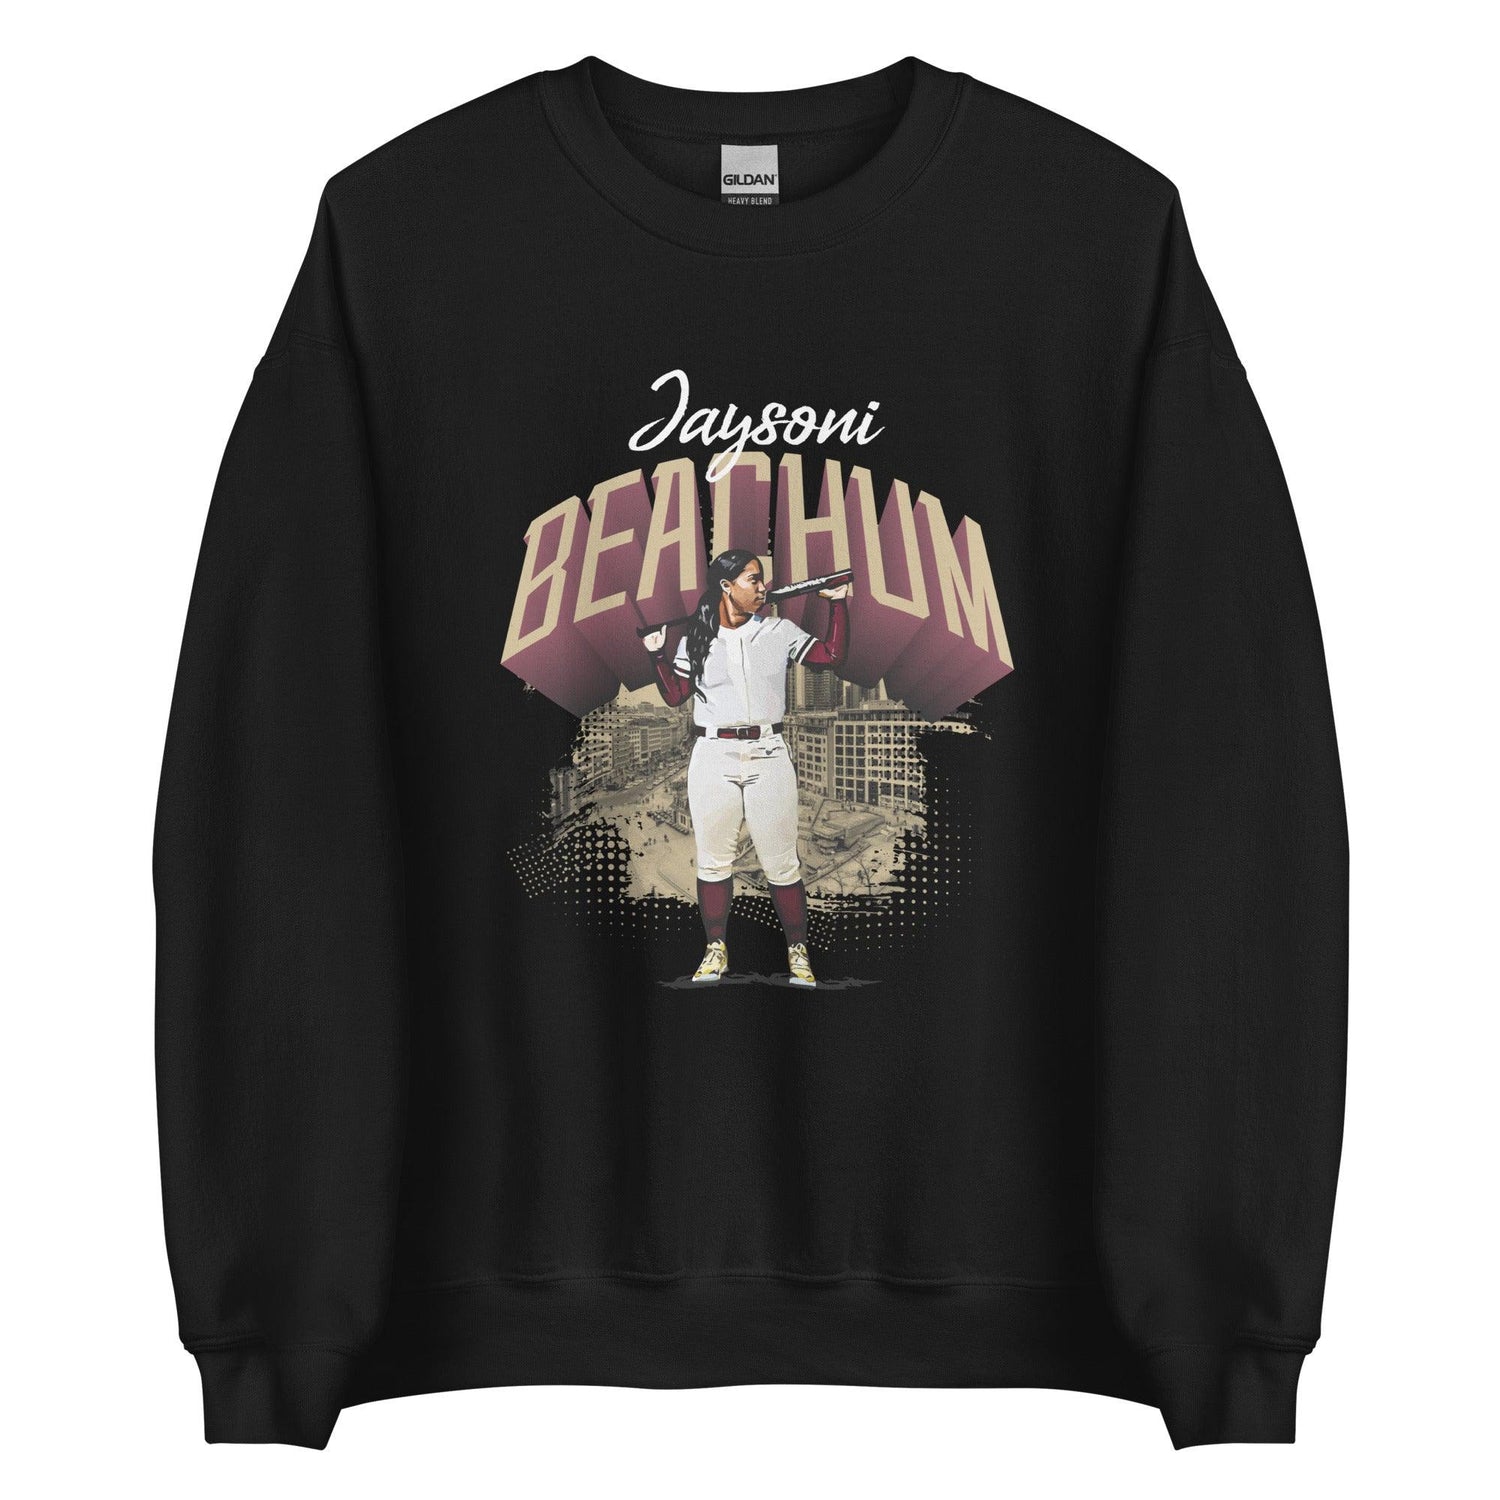 Jaysoni Beachum "Gameday" Sweatshirt - Fan Arch